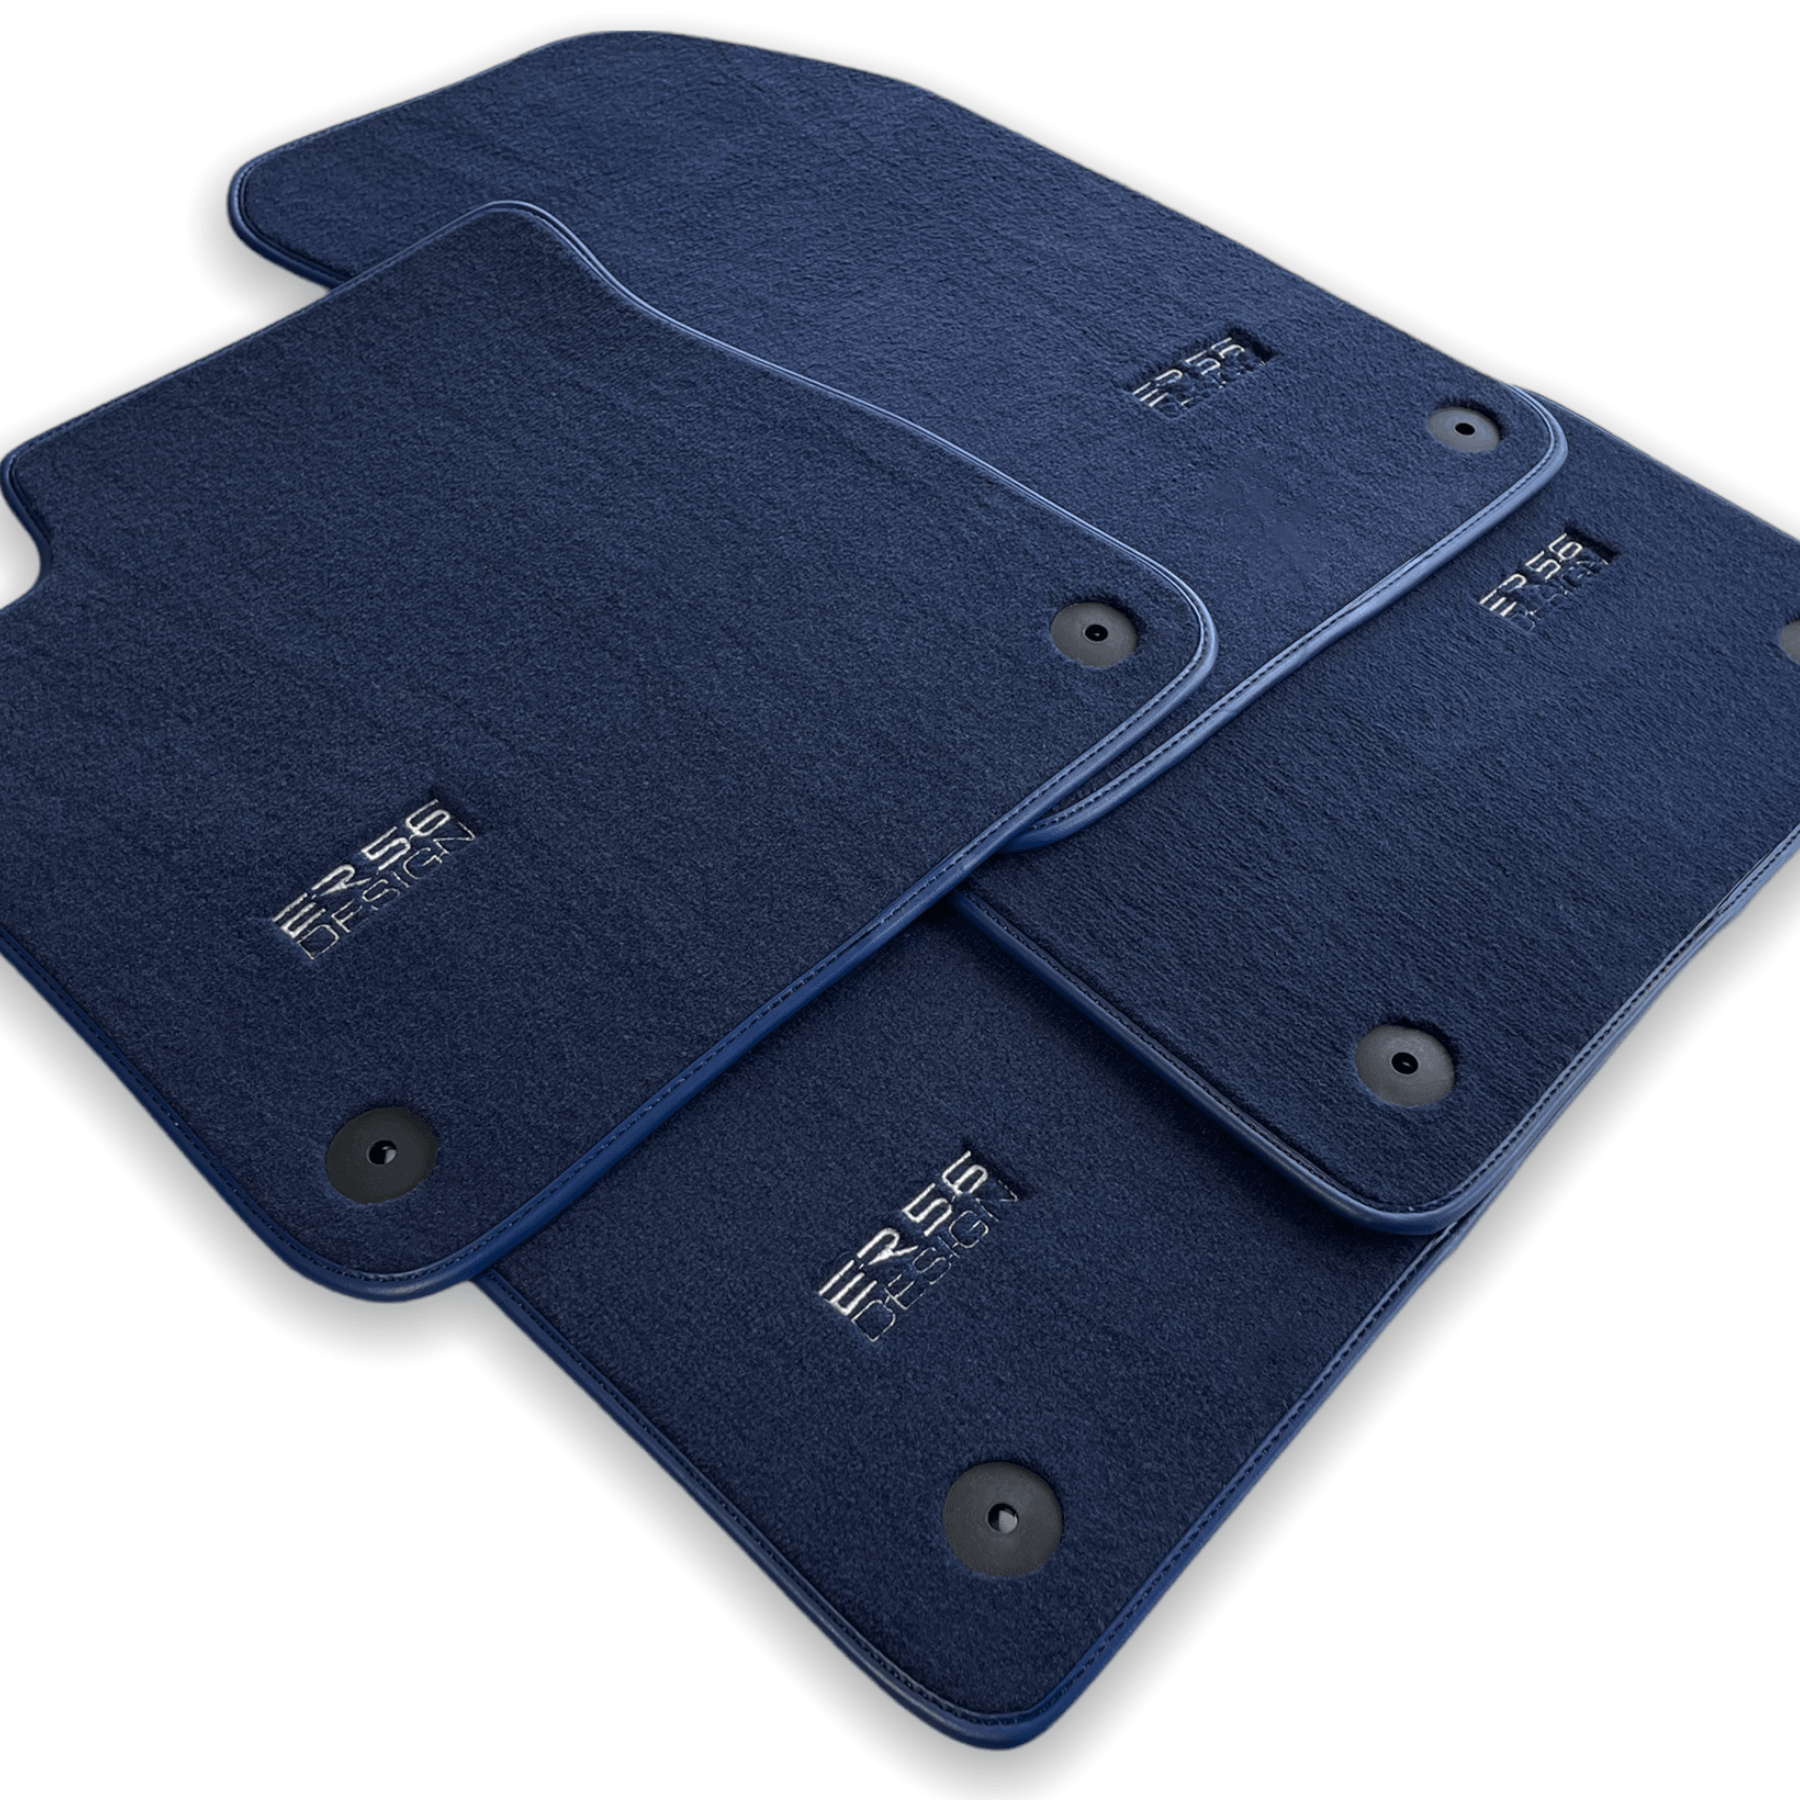 Dark Blue Floor Mats for Audi A6 - C8 Sedan (2018-2023) | ER56 Design